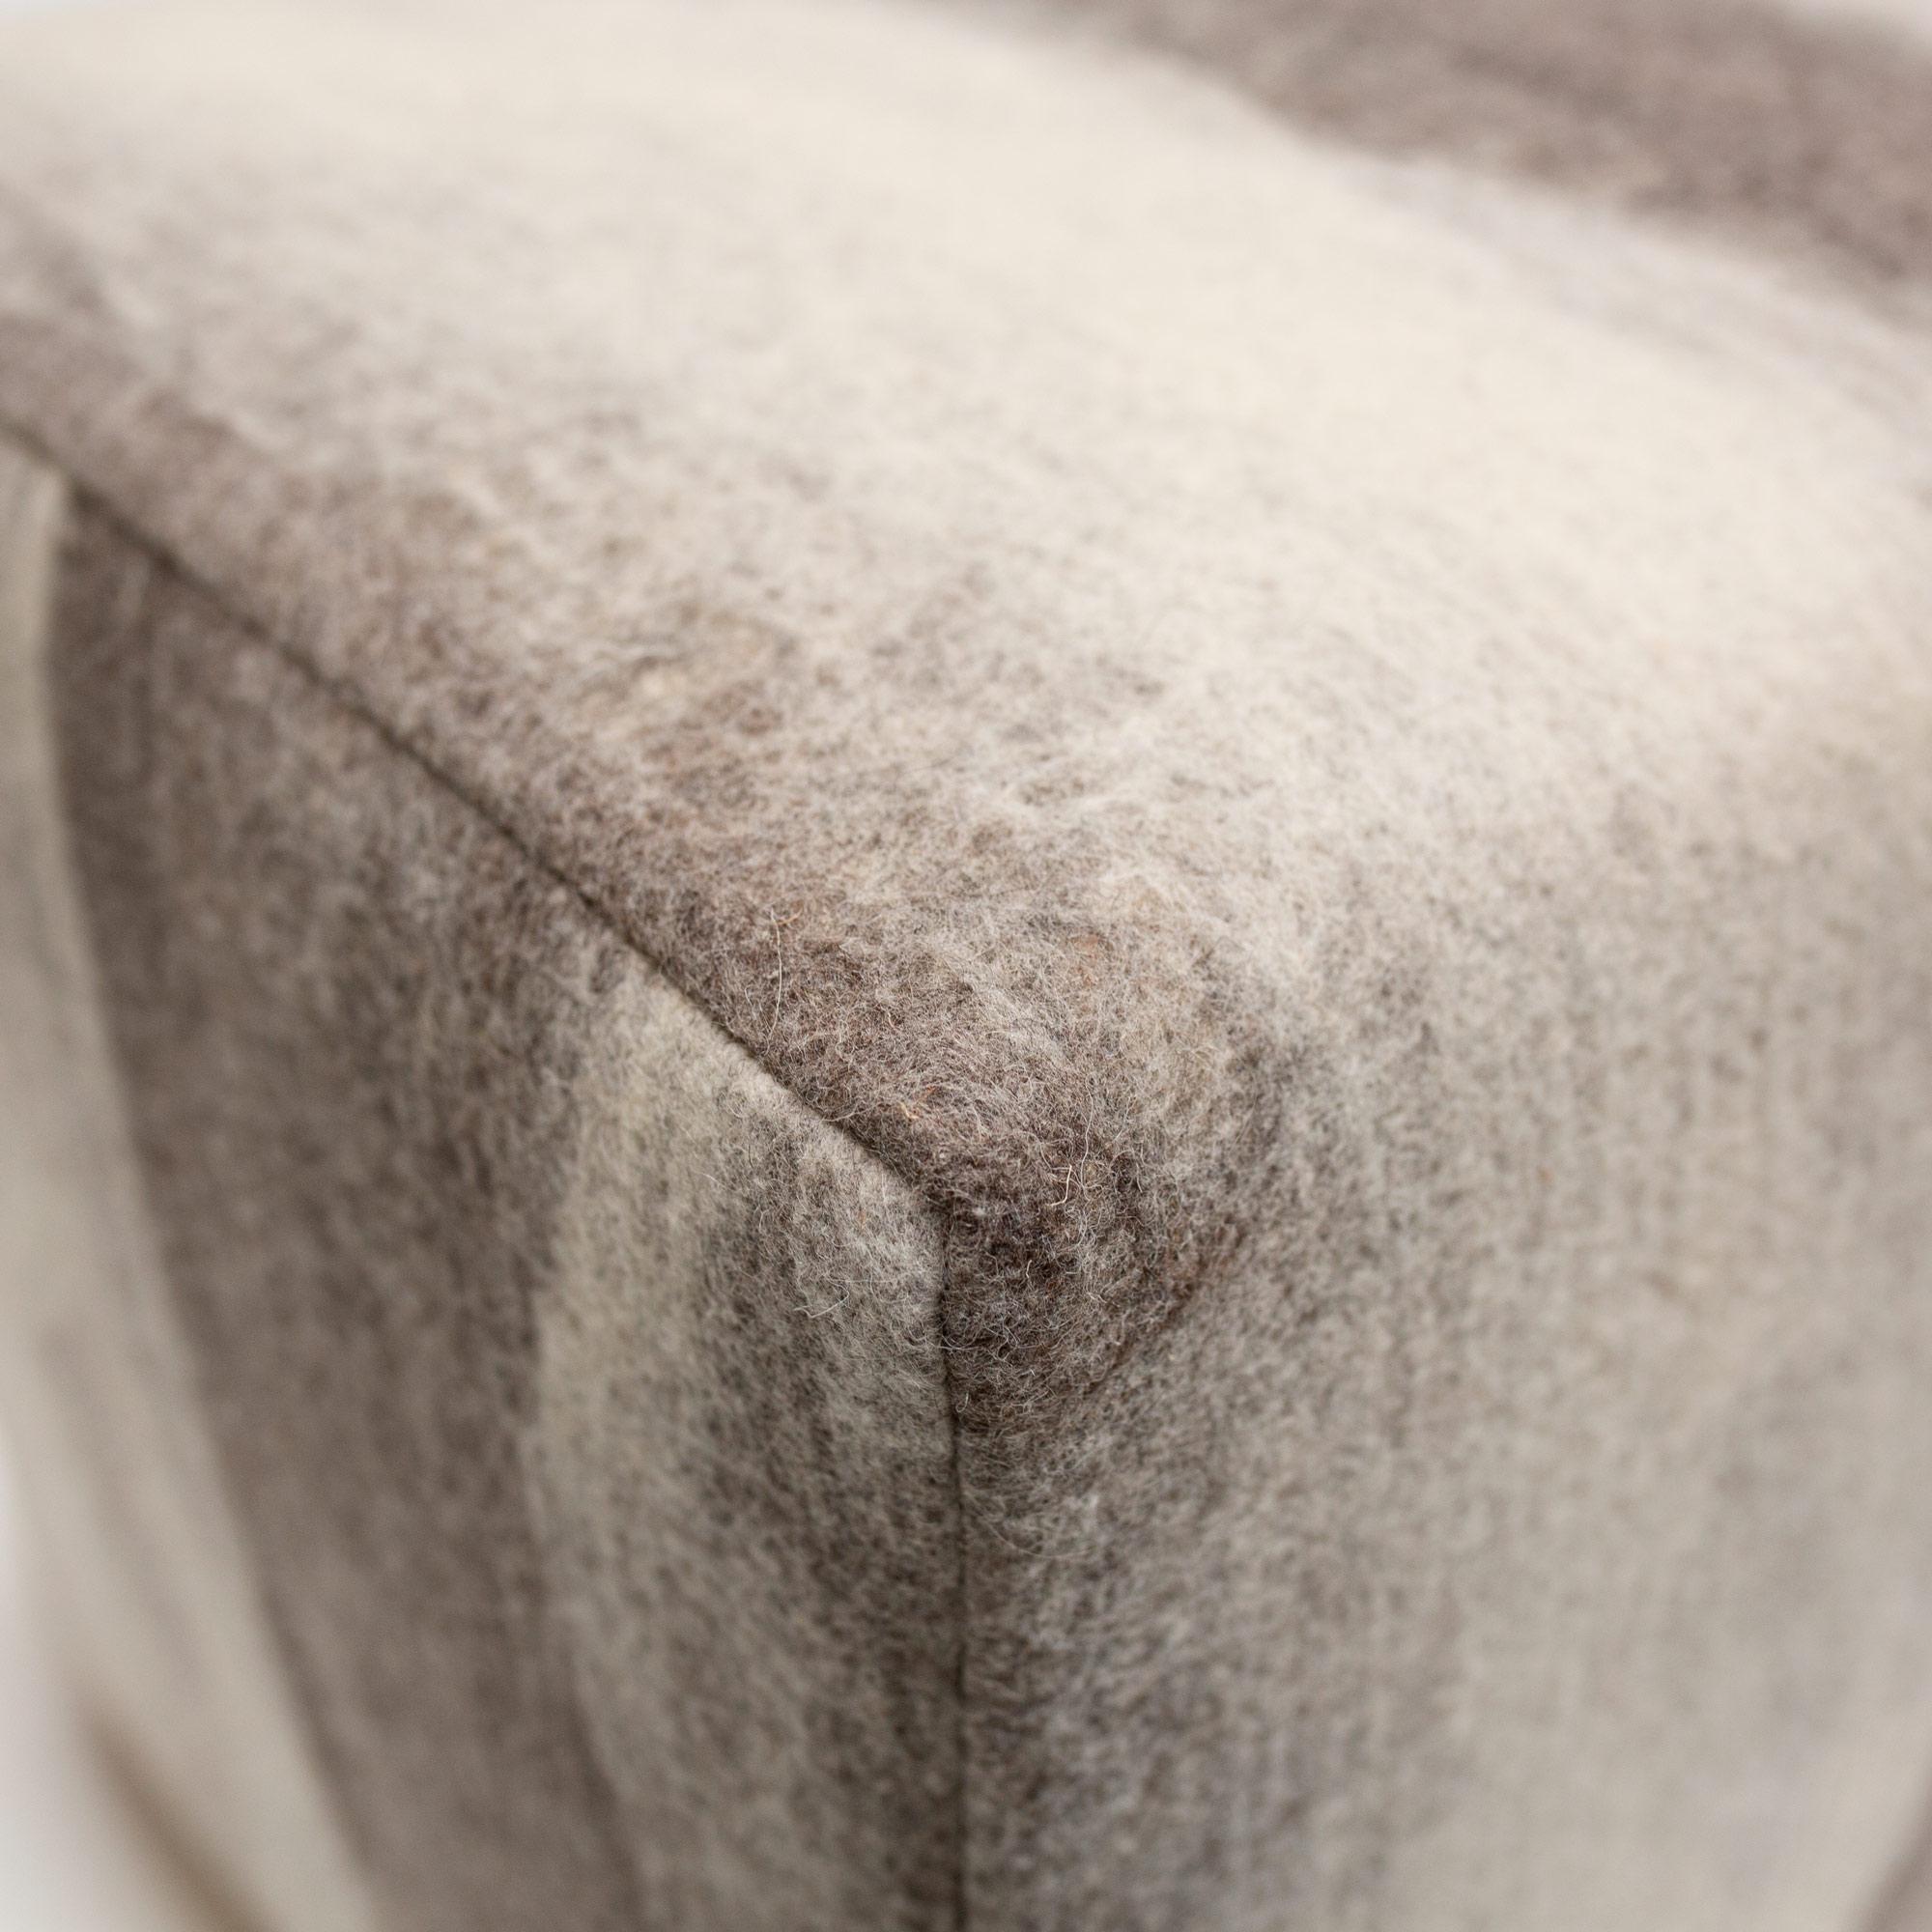 Tissu en laine feutrée fabriqué dans notre atelier, chaque exemplaire est une pièce unique de notre laine feutrée picturale sur un ottoman finement rembourré avec des pieds en bois.

L'ottoman est fabriqué à Portland, dans l'Oregon, aux